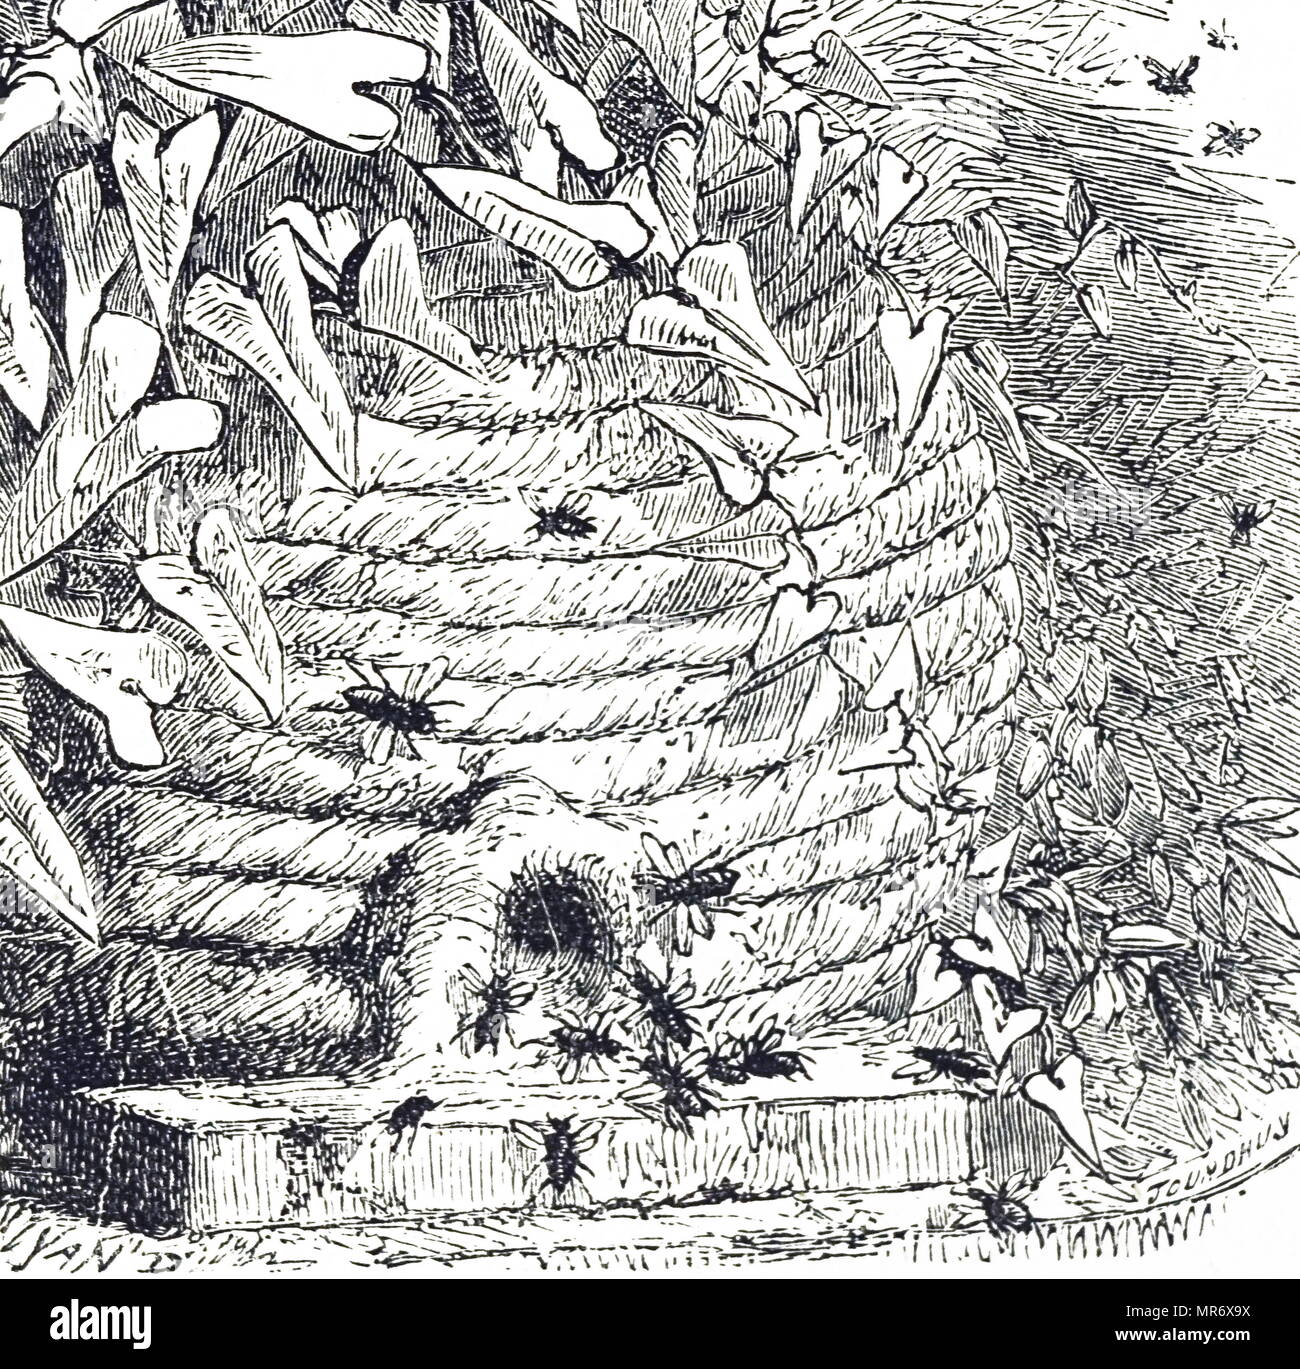 Grabado representando las abejas alrededor de una colmena, que cuelga entre las ramas de los árboles. Fecha del siglo XIX Foto de stock